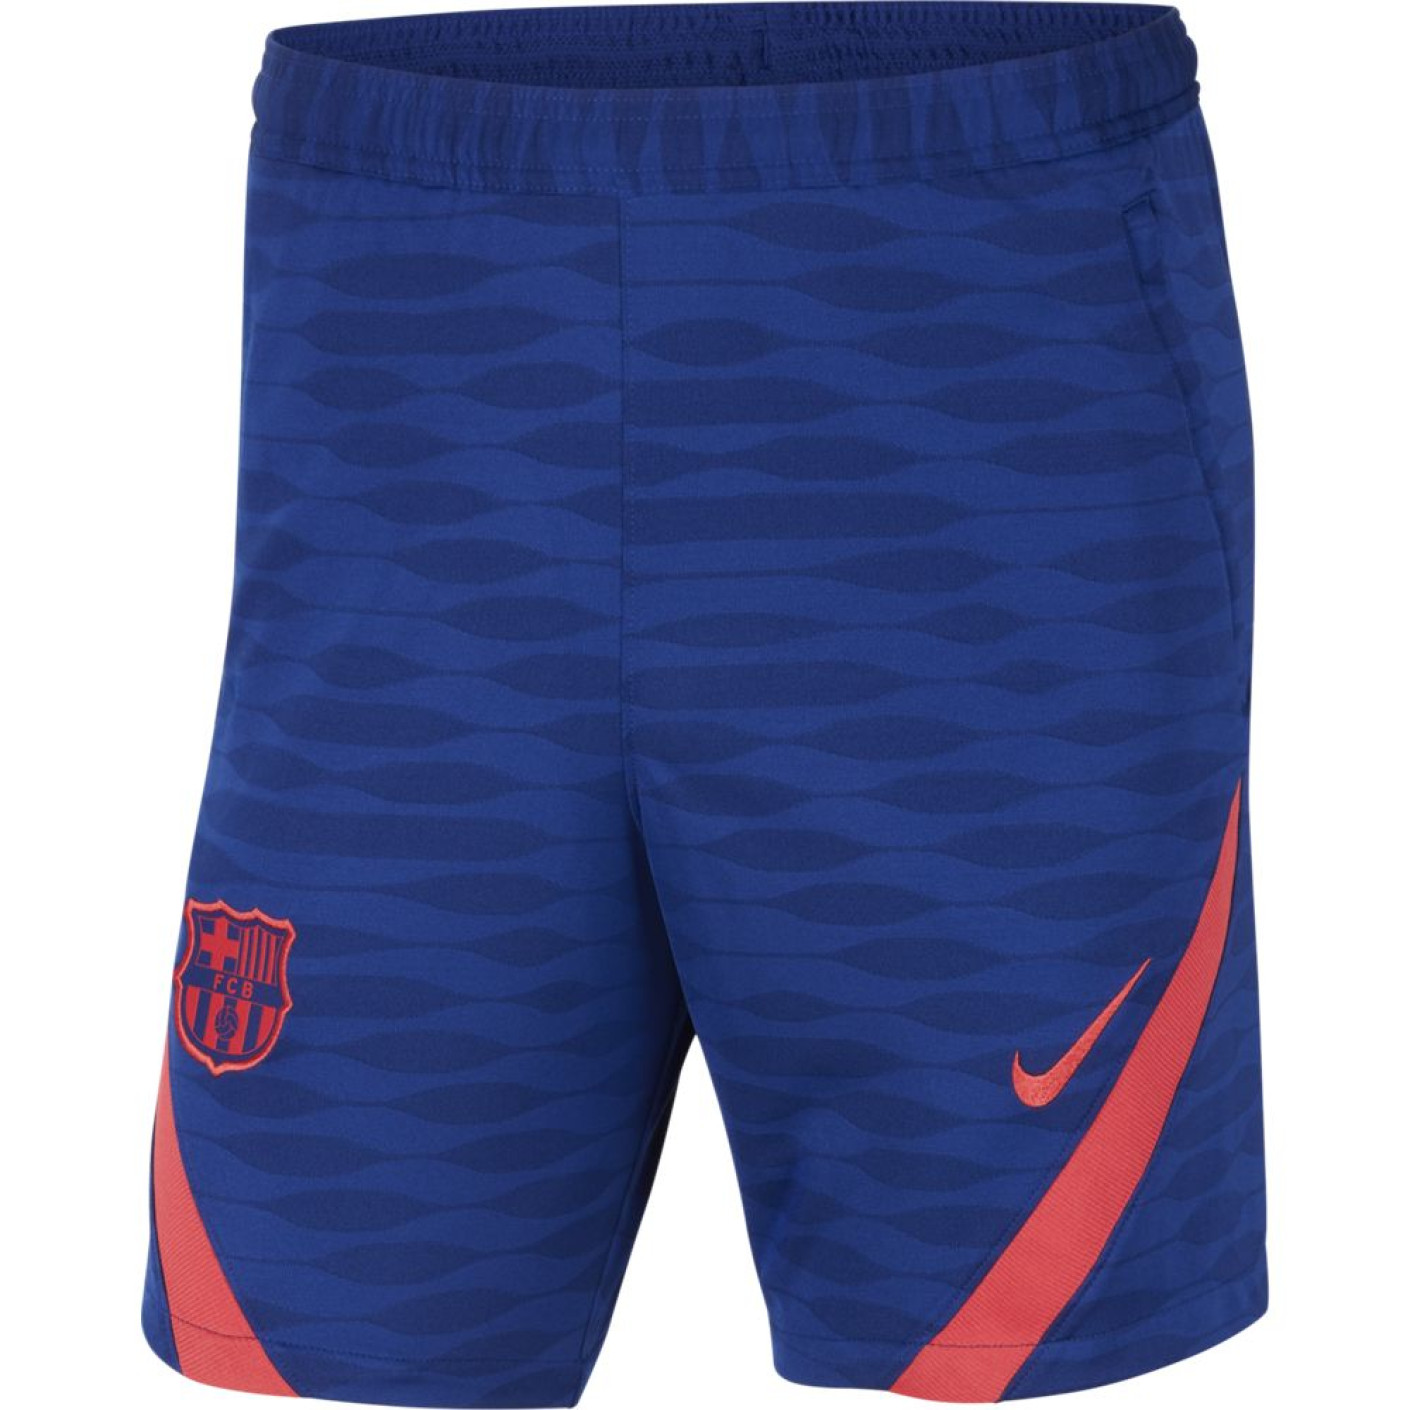 Nike FC Barcelona Strike Trainingsbroekje 2021 Kids Blauw Rood